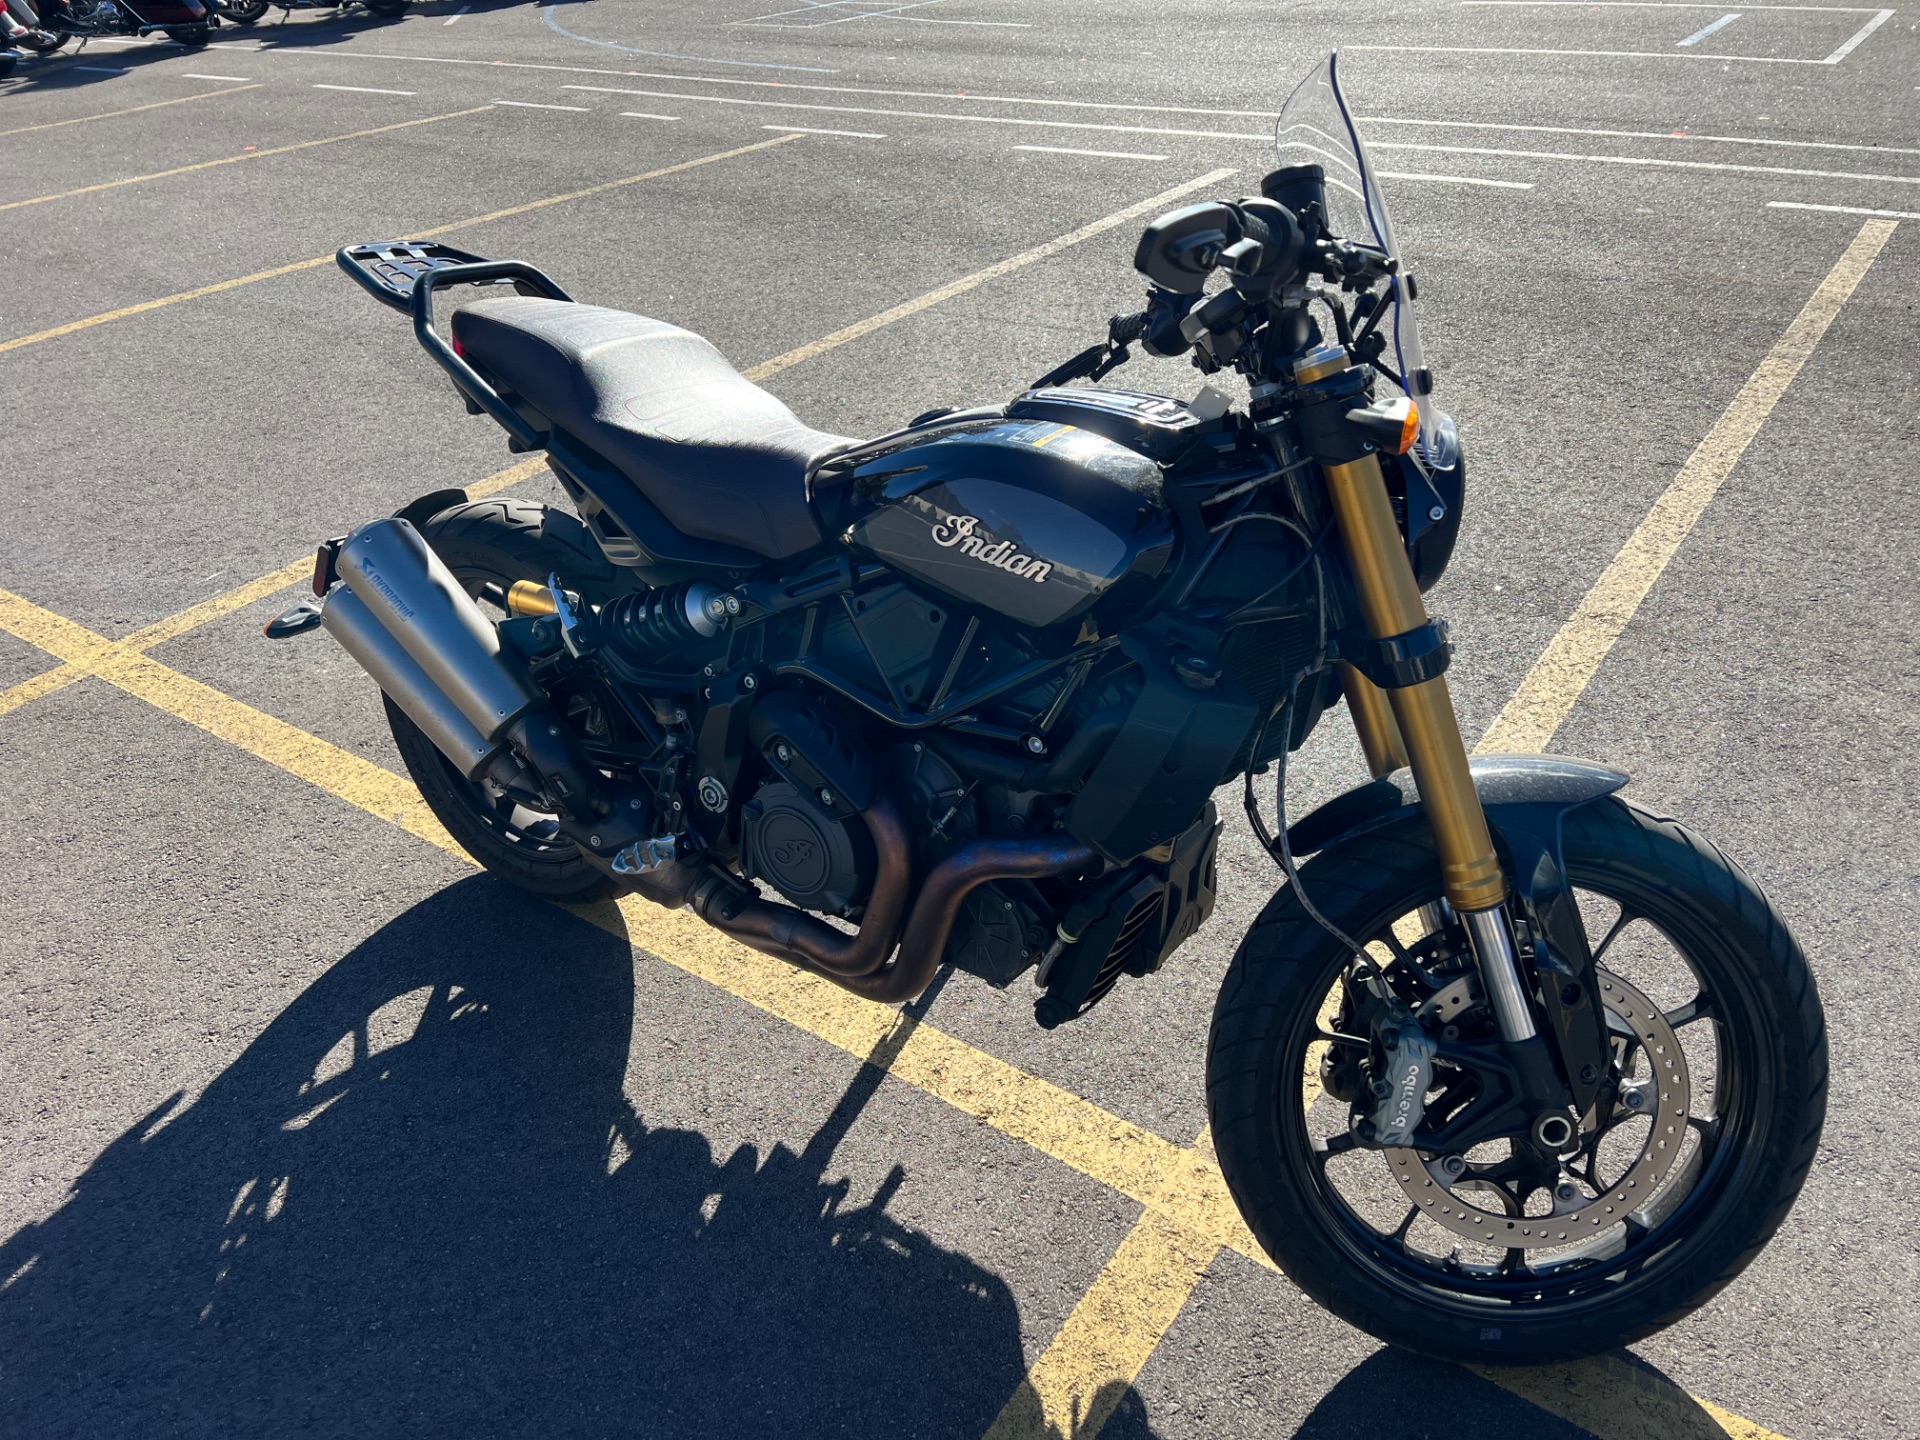 2019 Indian Motorcycle FTR™ 1200 in Colorado Springs, Colorado - Photo 2